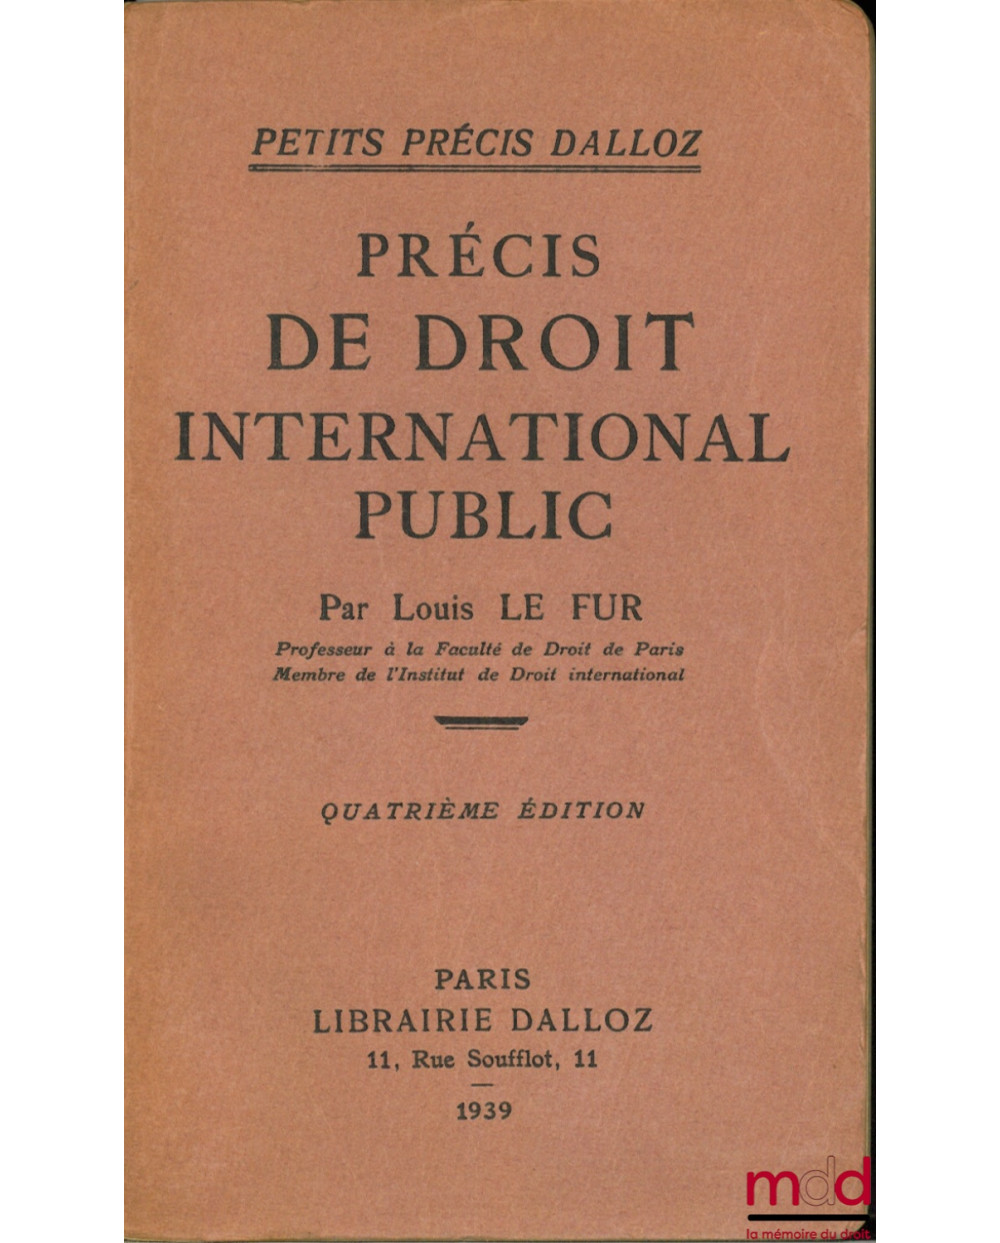 PRÉCIS DE DROIT INTERNATIONAL PUBLIC, 4ème éd., coll. Petits précis Dalloz